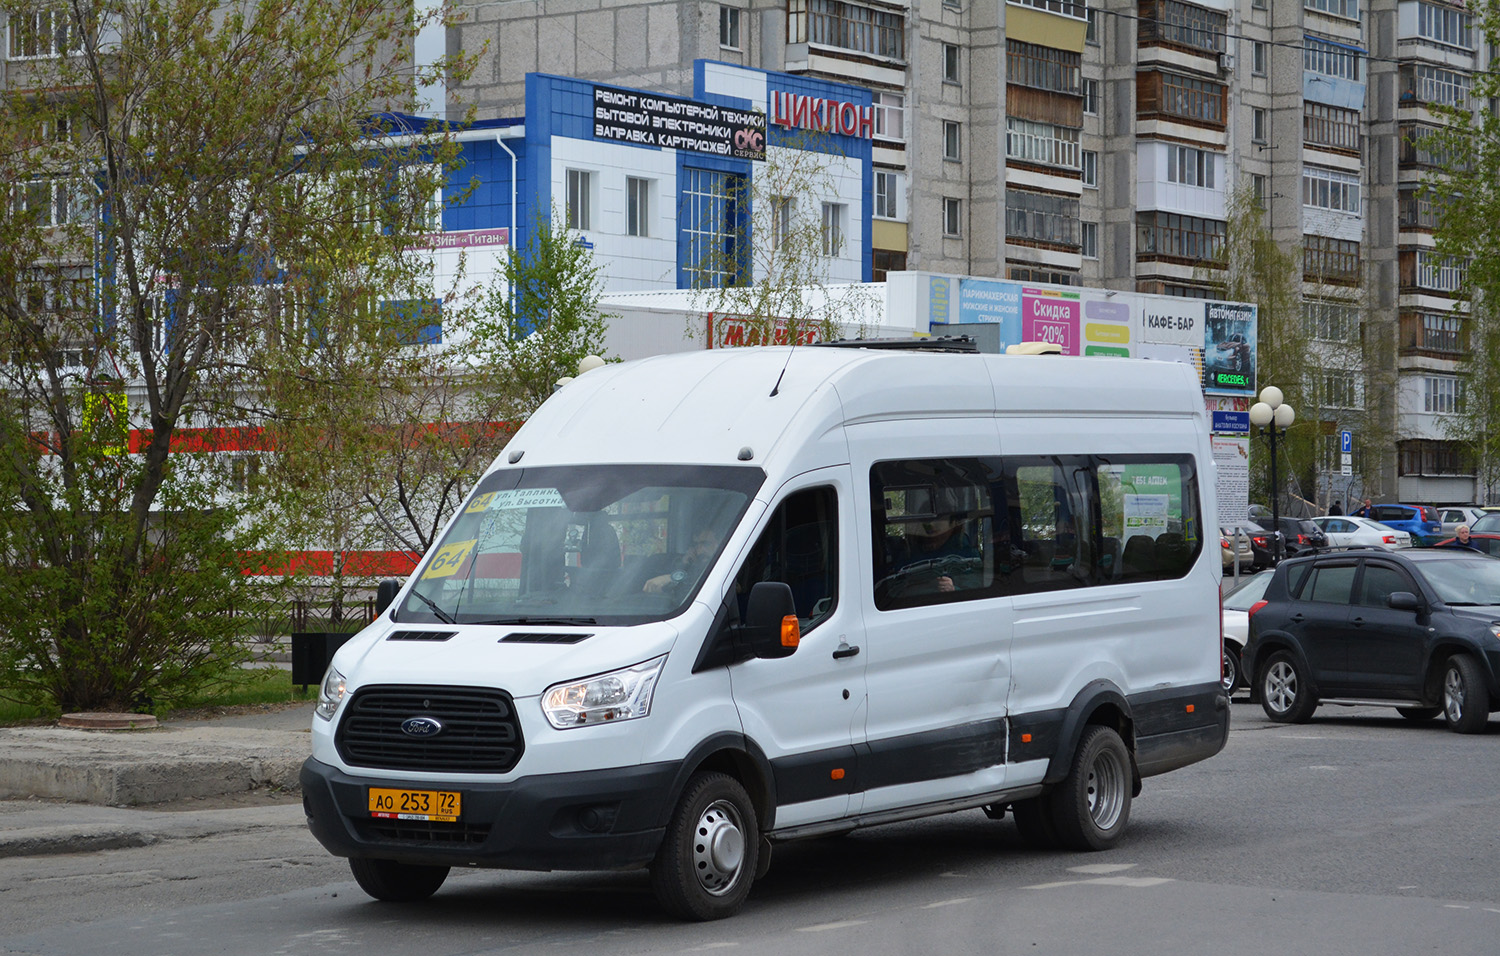 Тюменская область, Нижегородец-222709 (Ford Transit FBD) № АО 253 72